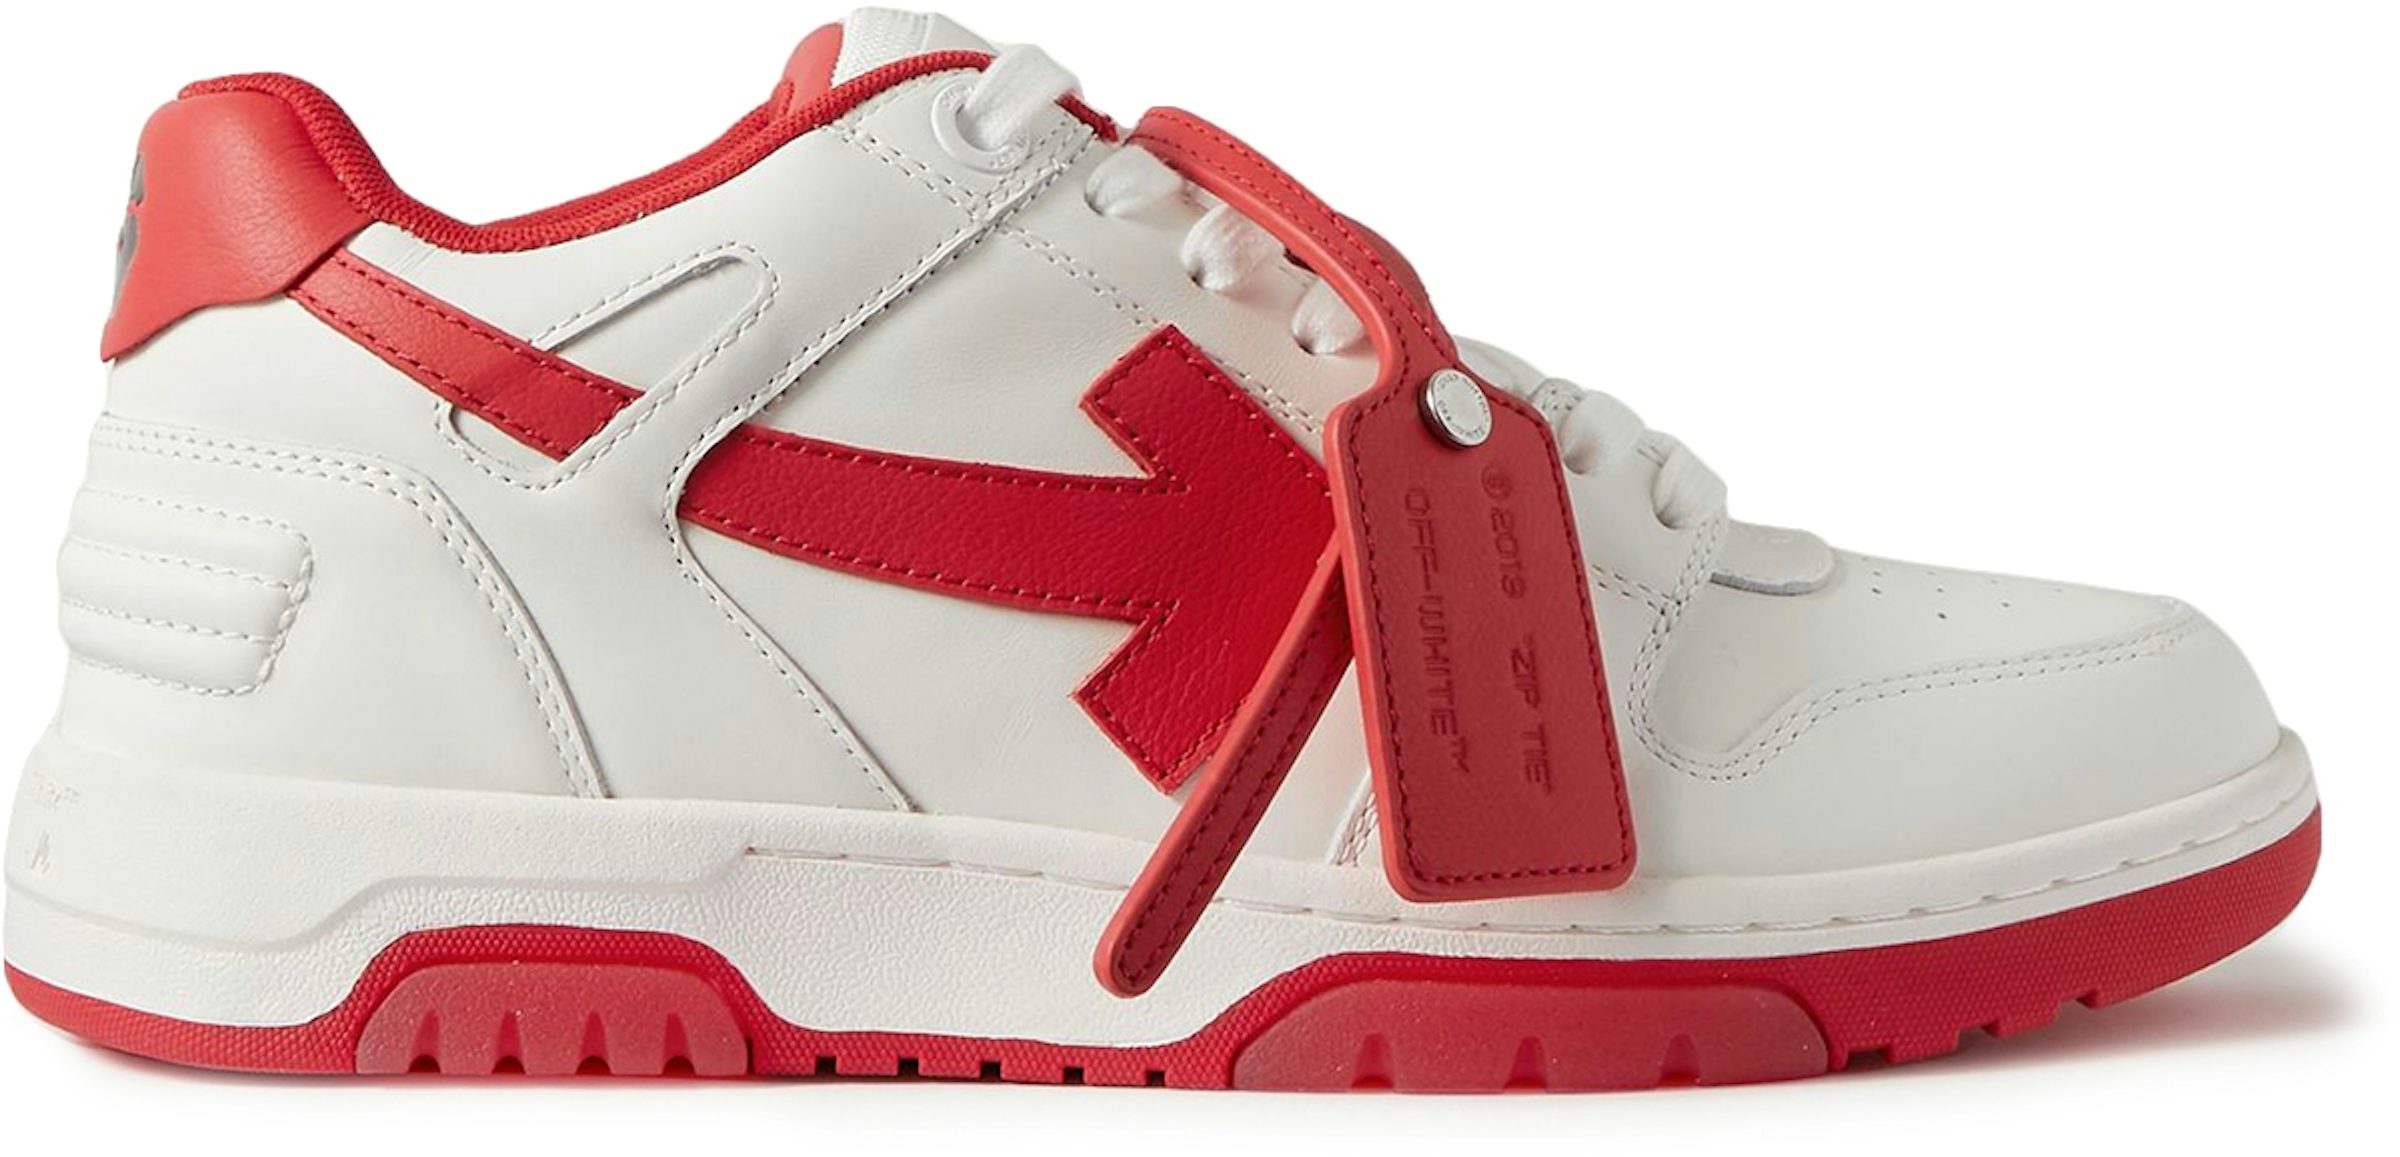 Compra Collections Nike Off-White Calzado y sneakers nuevos - StockX